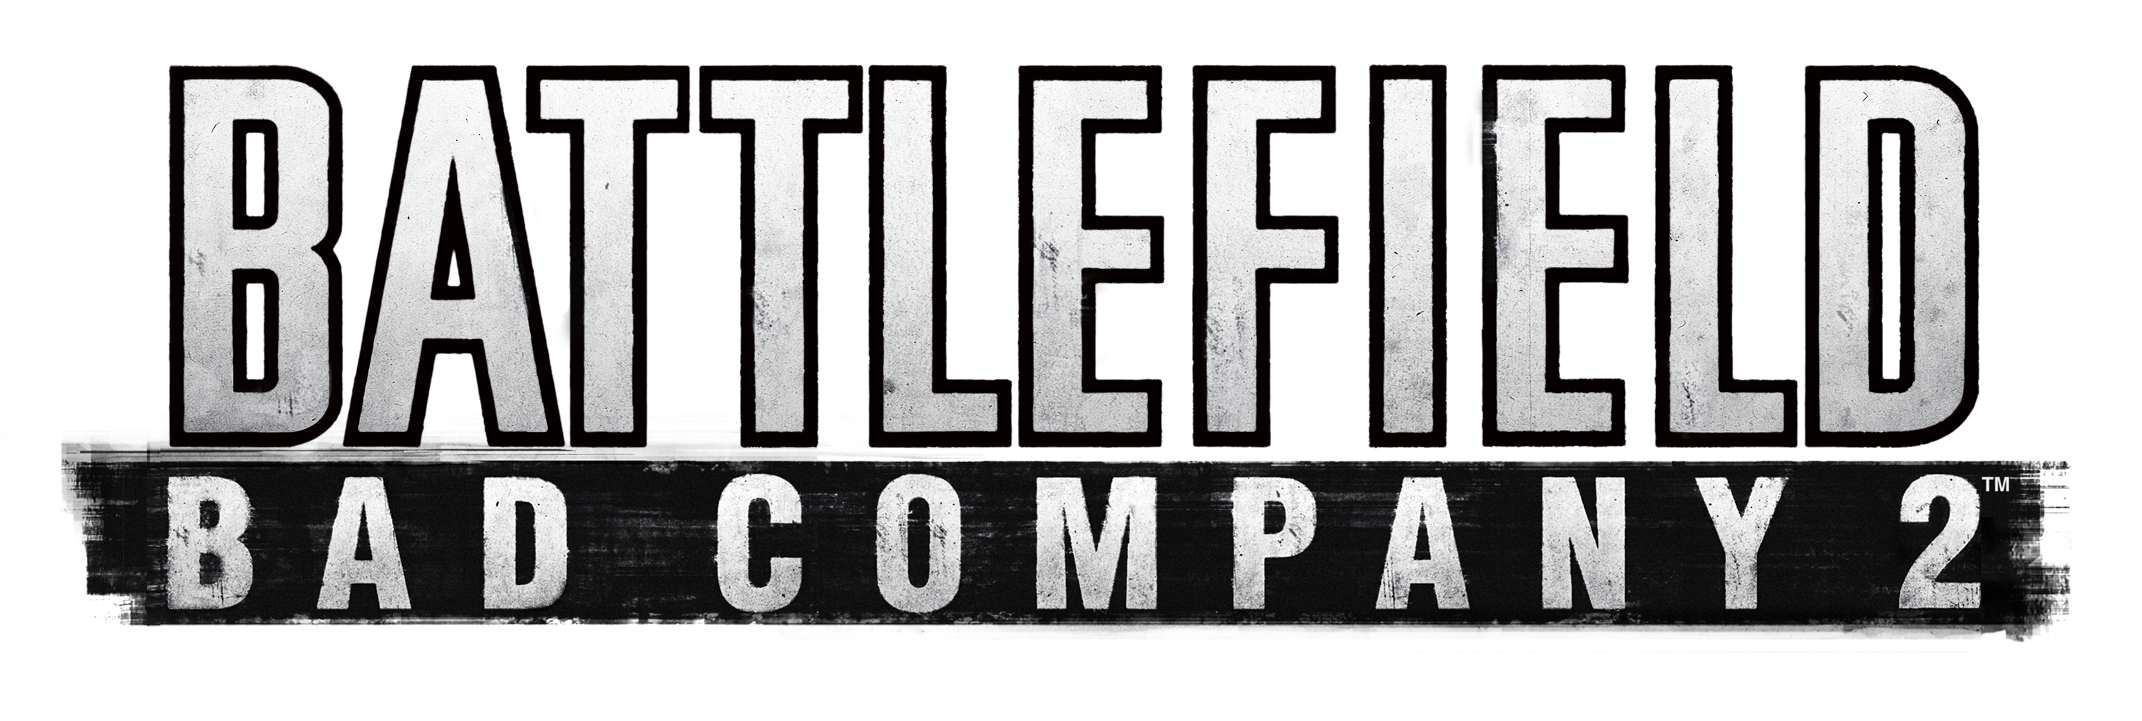 Battlefield_Bad_Company_2_ logo